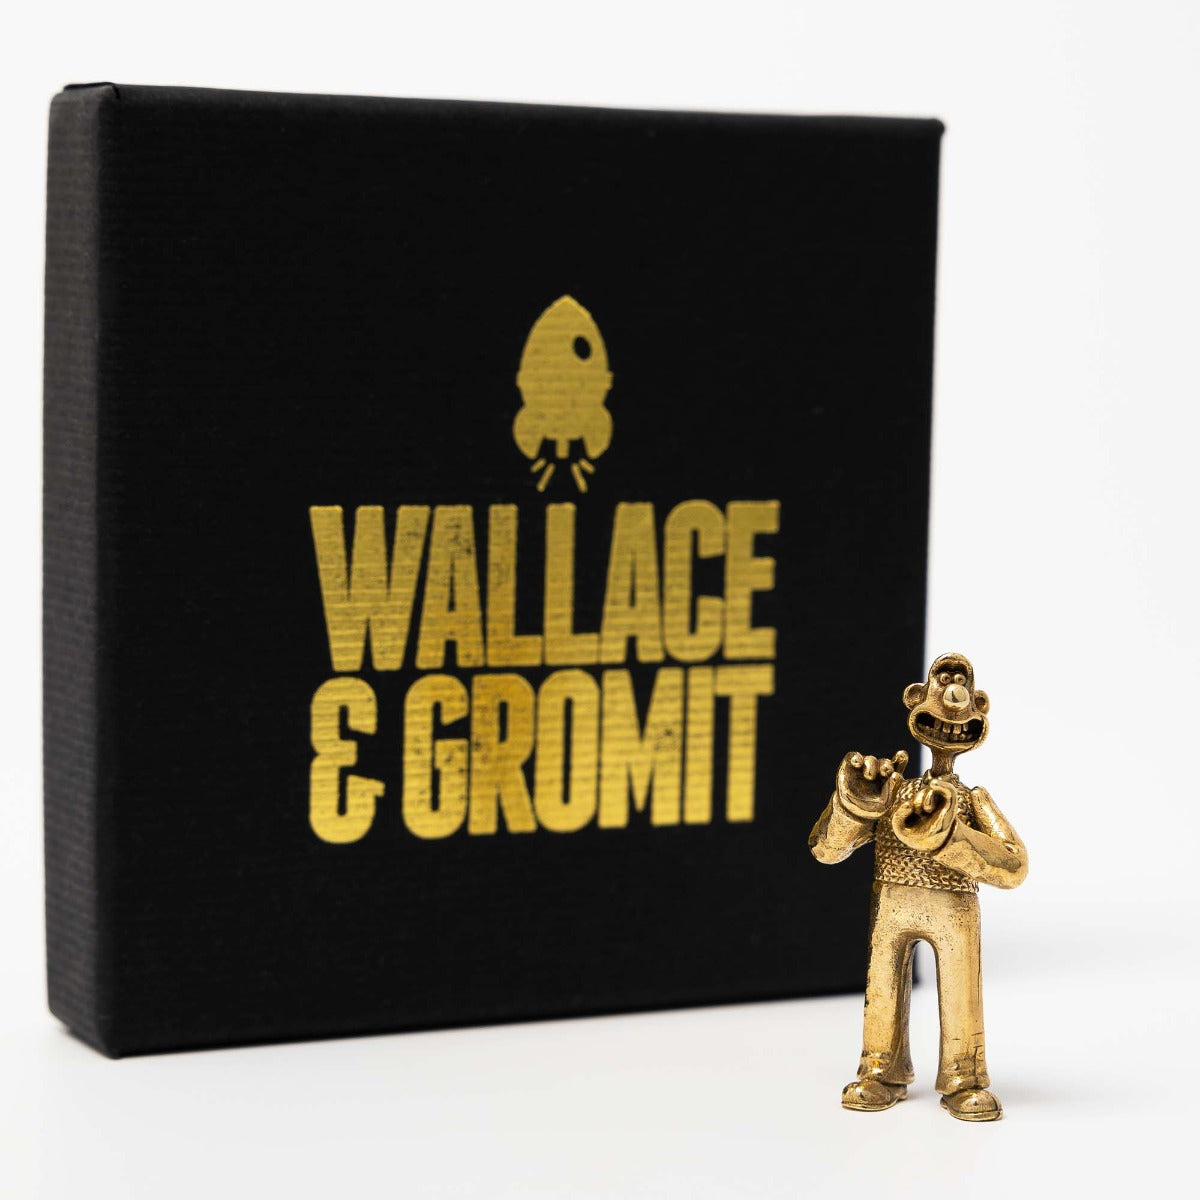 Wallace Miniature Bronze Figurine